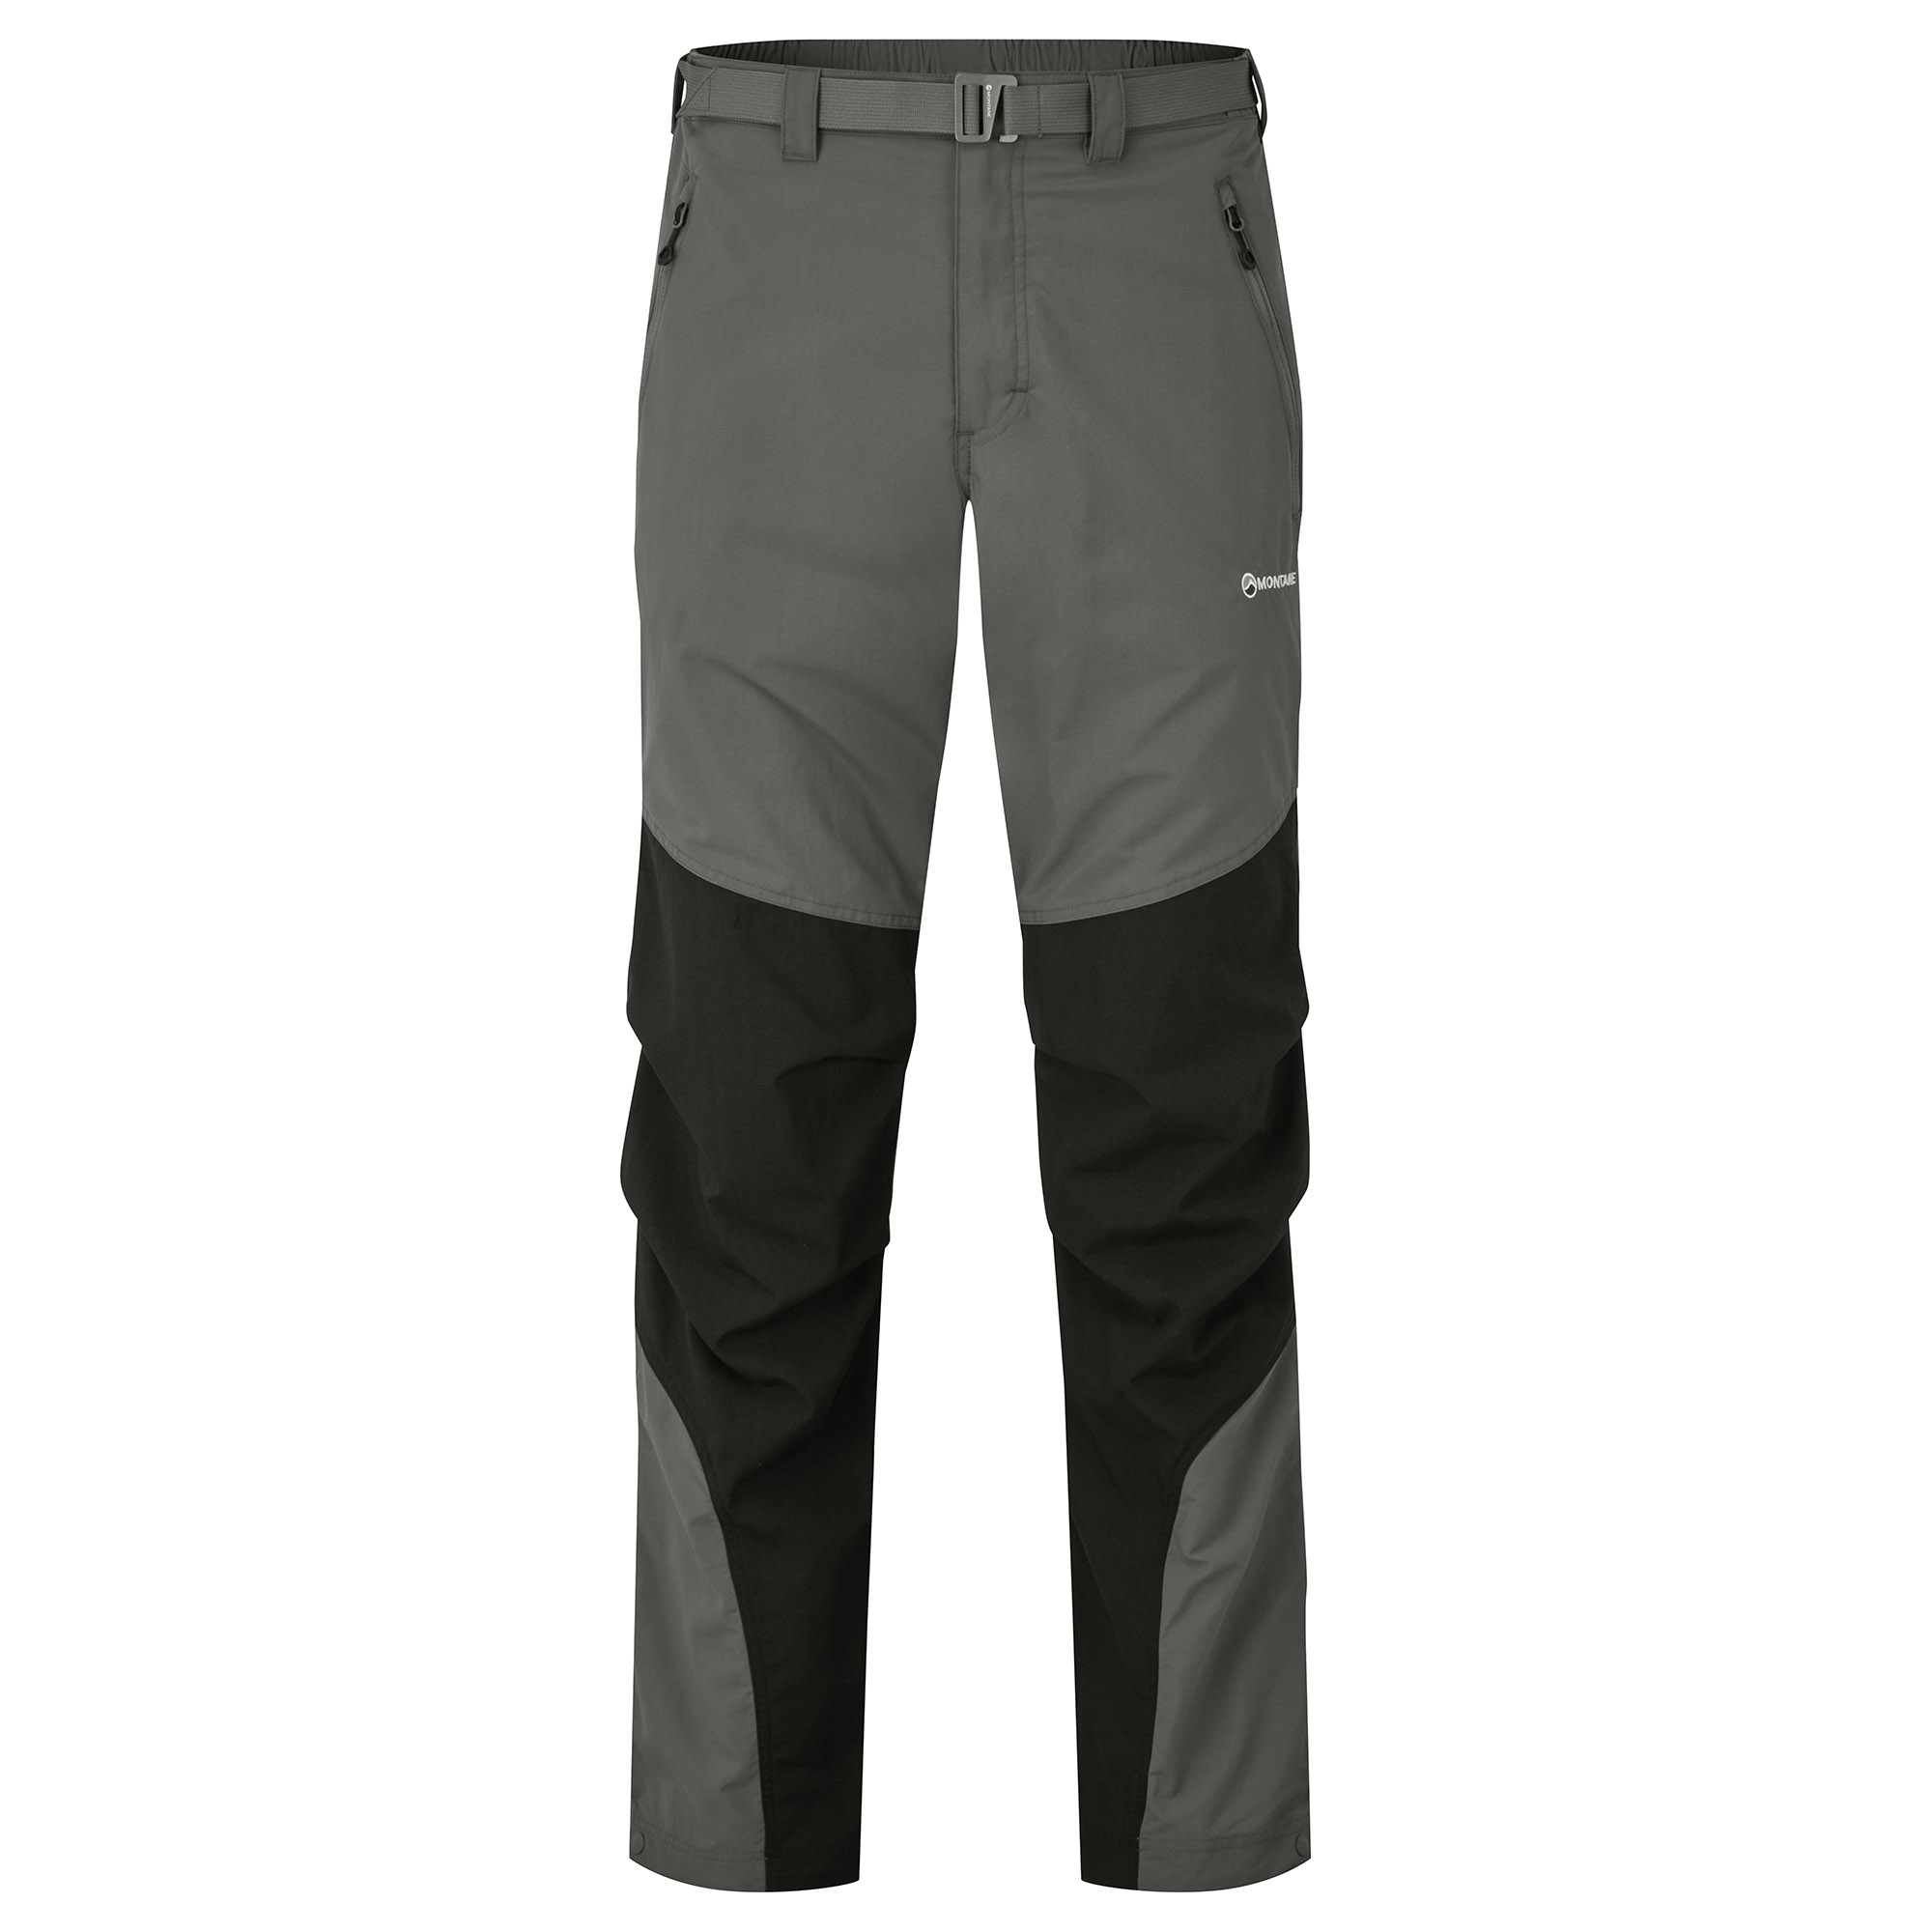 Montane pánské softshellové kalhoty Terra Pants - Zkrácené Nohavice Barva: graphite, Velikost: 36